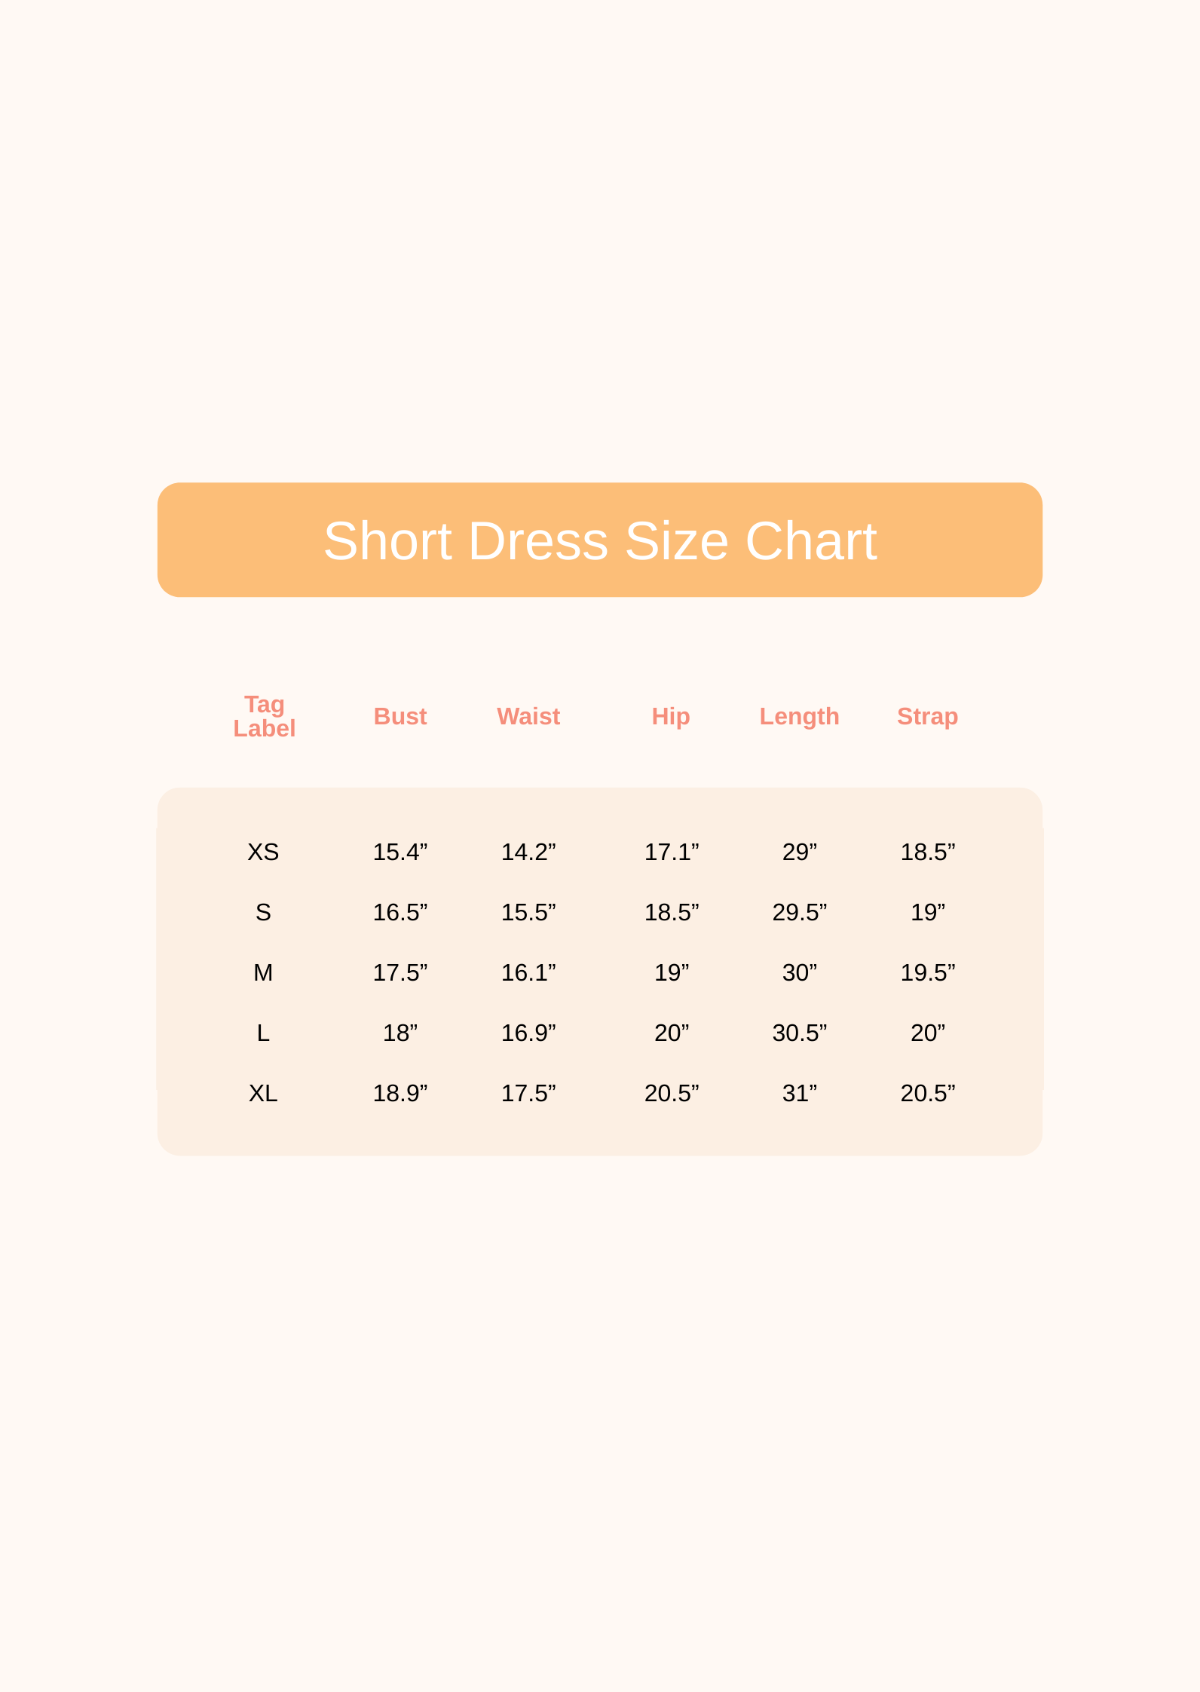 Short Dress Size Chart Template